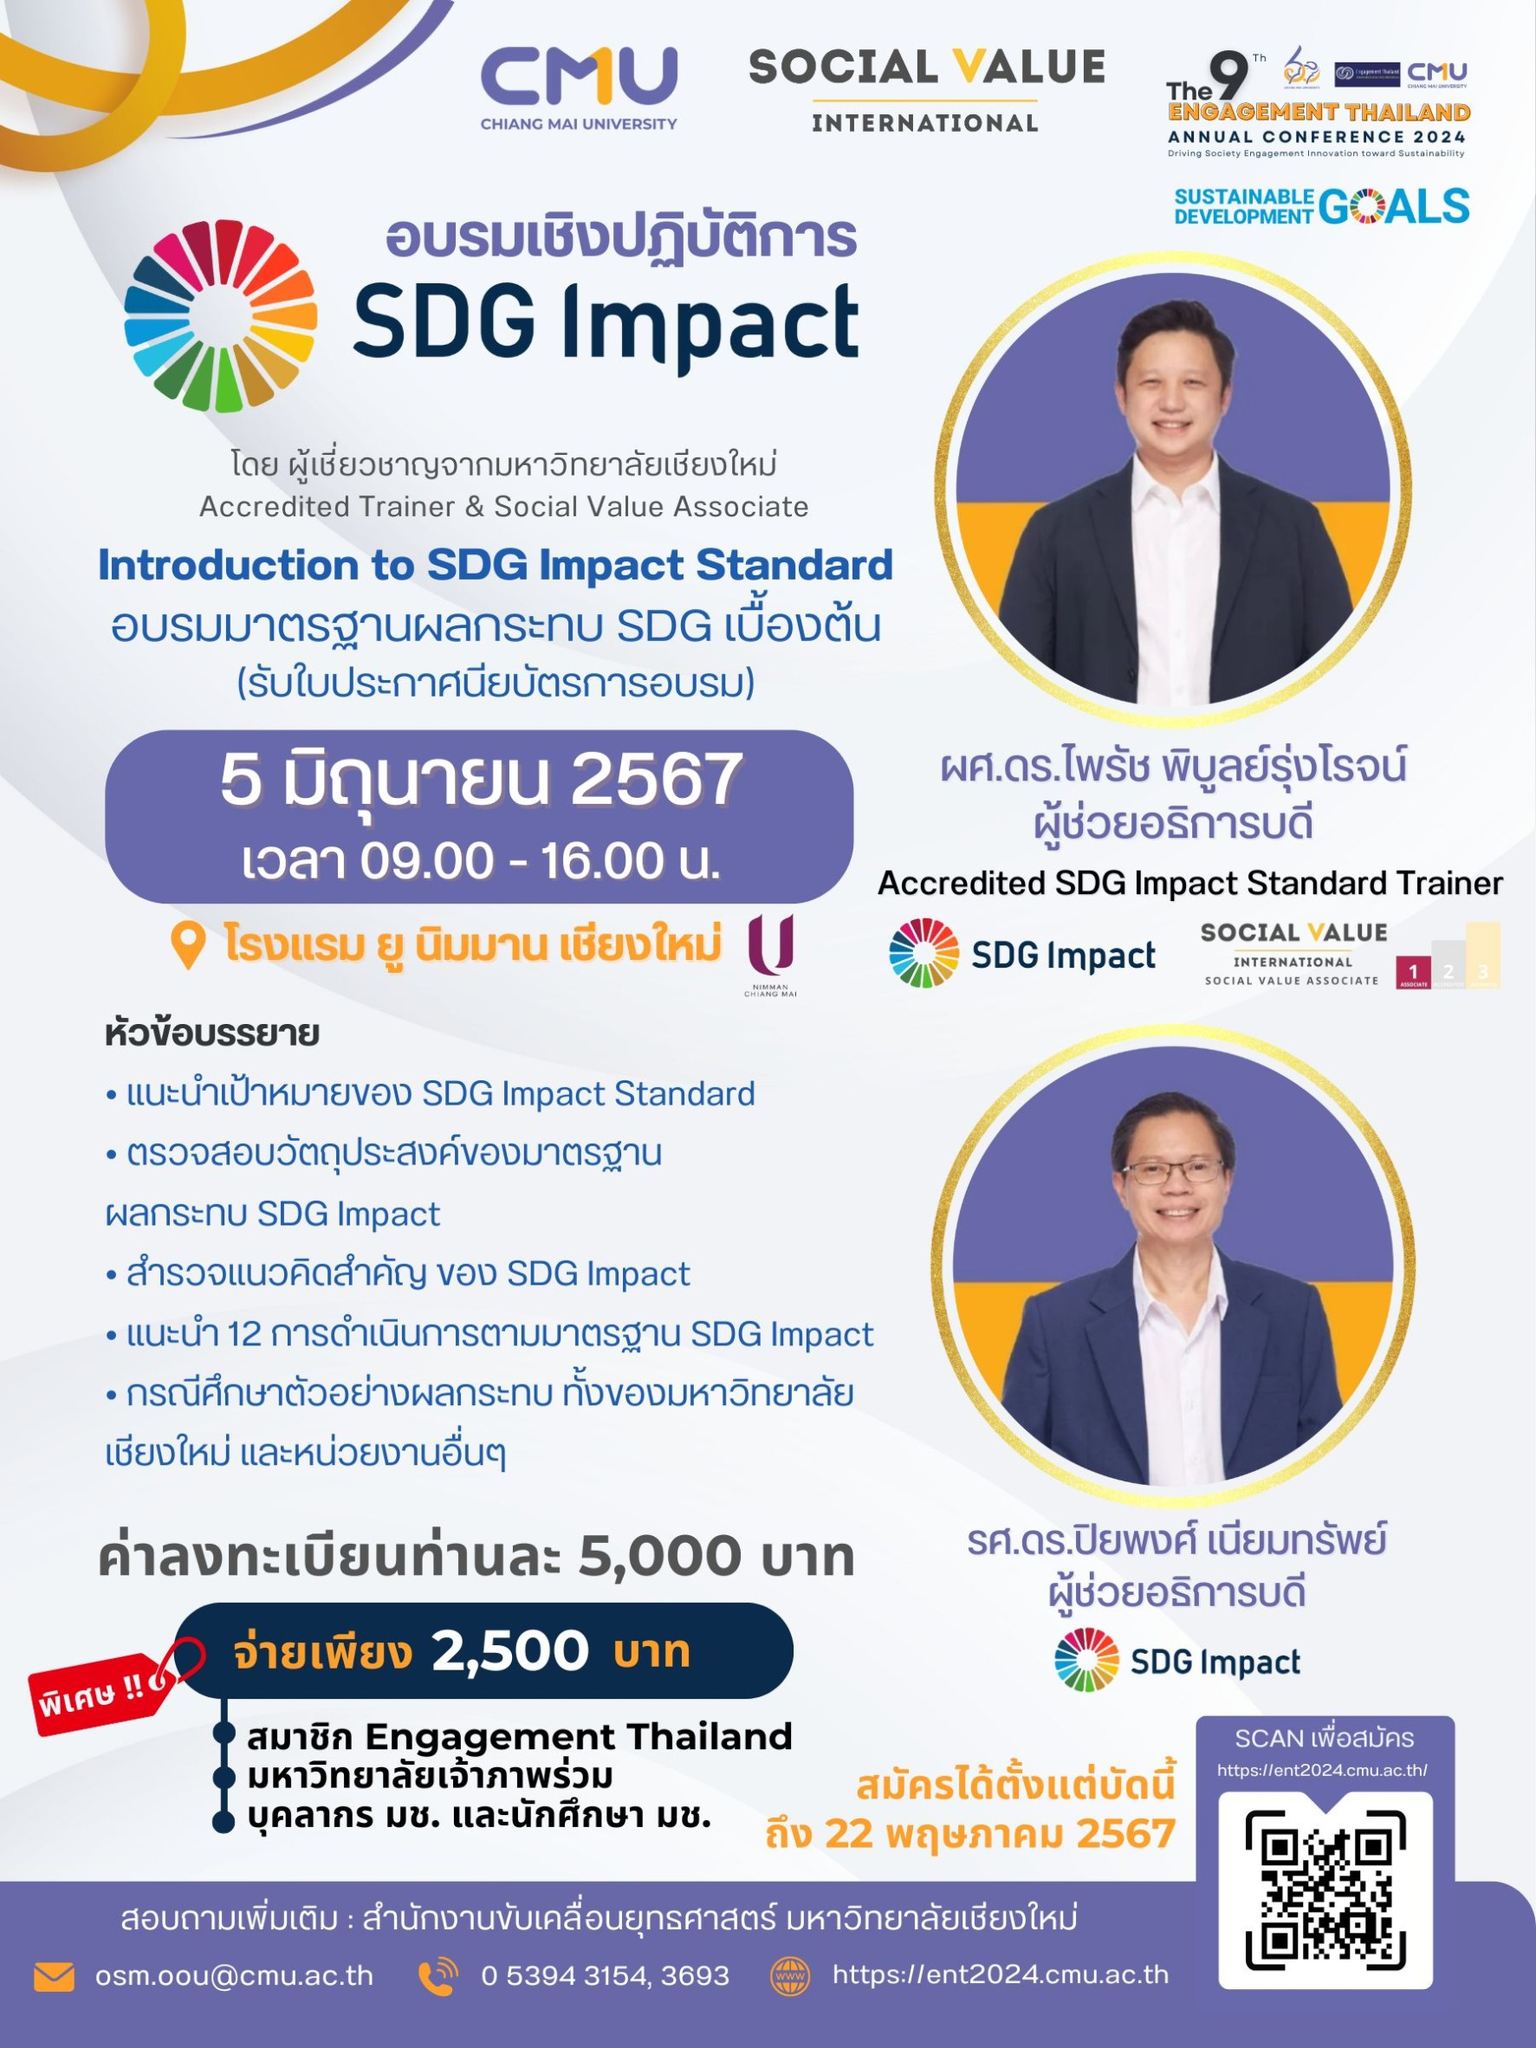 ประชาสัมพันธ์การอบรมเชิงปฏิบัติการ Social Return of Investment (SROI) & SDGs ภายใต้งานประชุมวิชาการและนำเสนอผลงานระดับชาติ Engagement Thailand ครั้งที่ 9